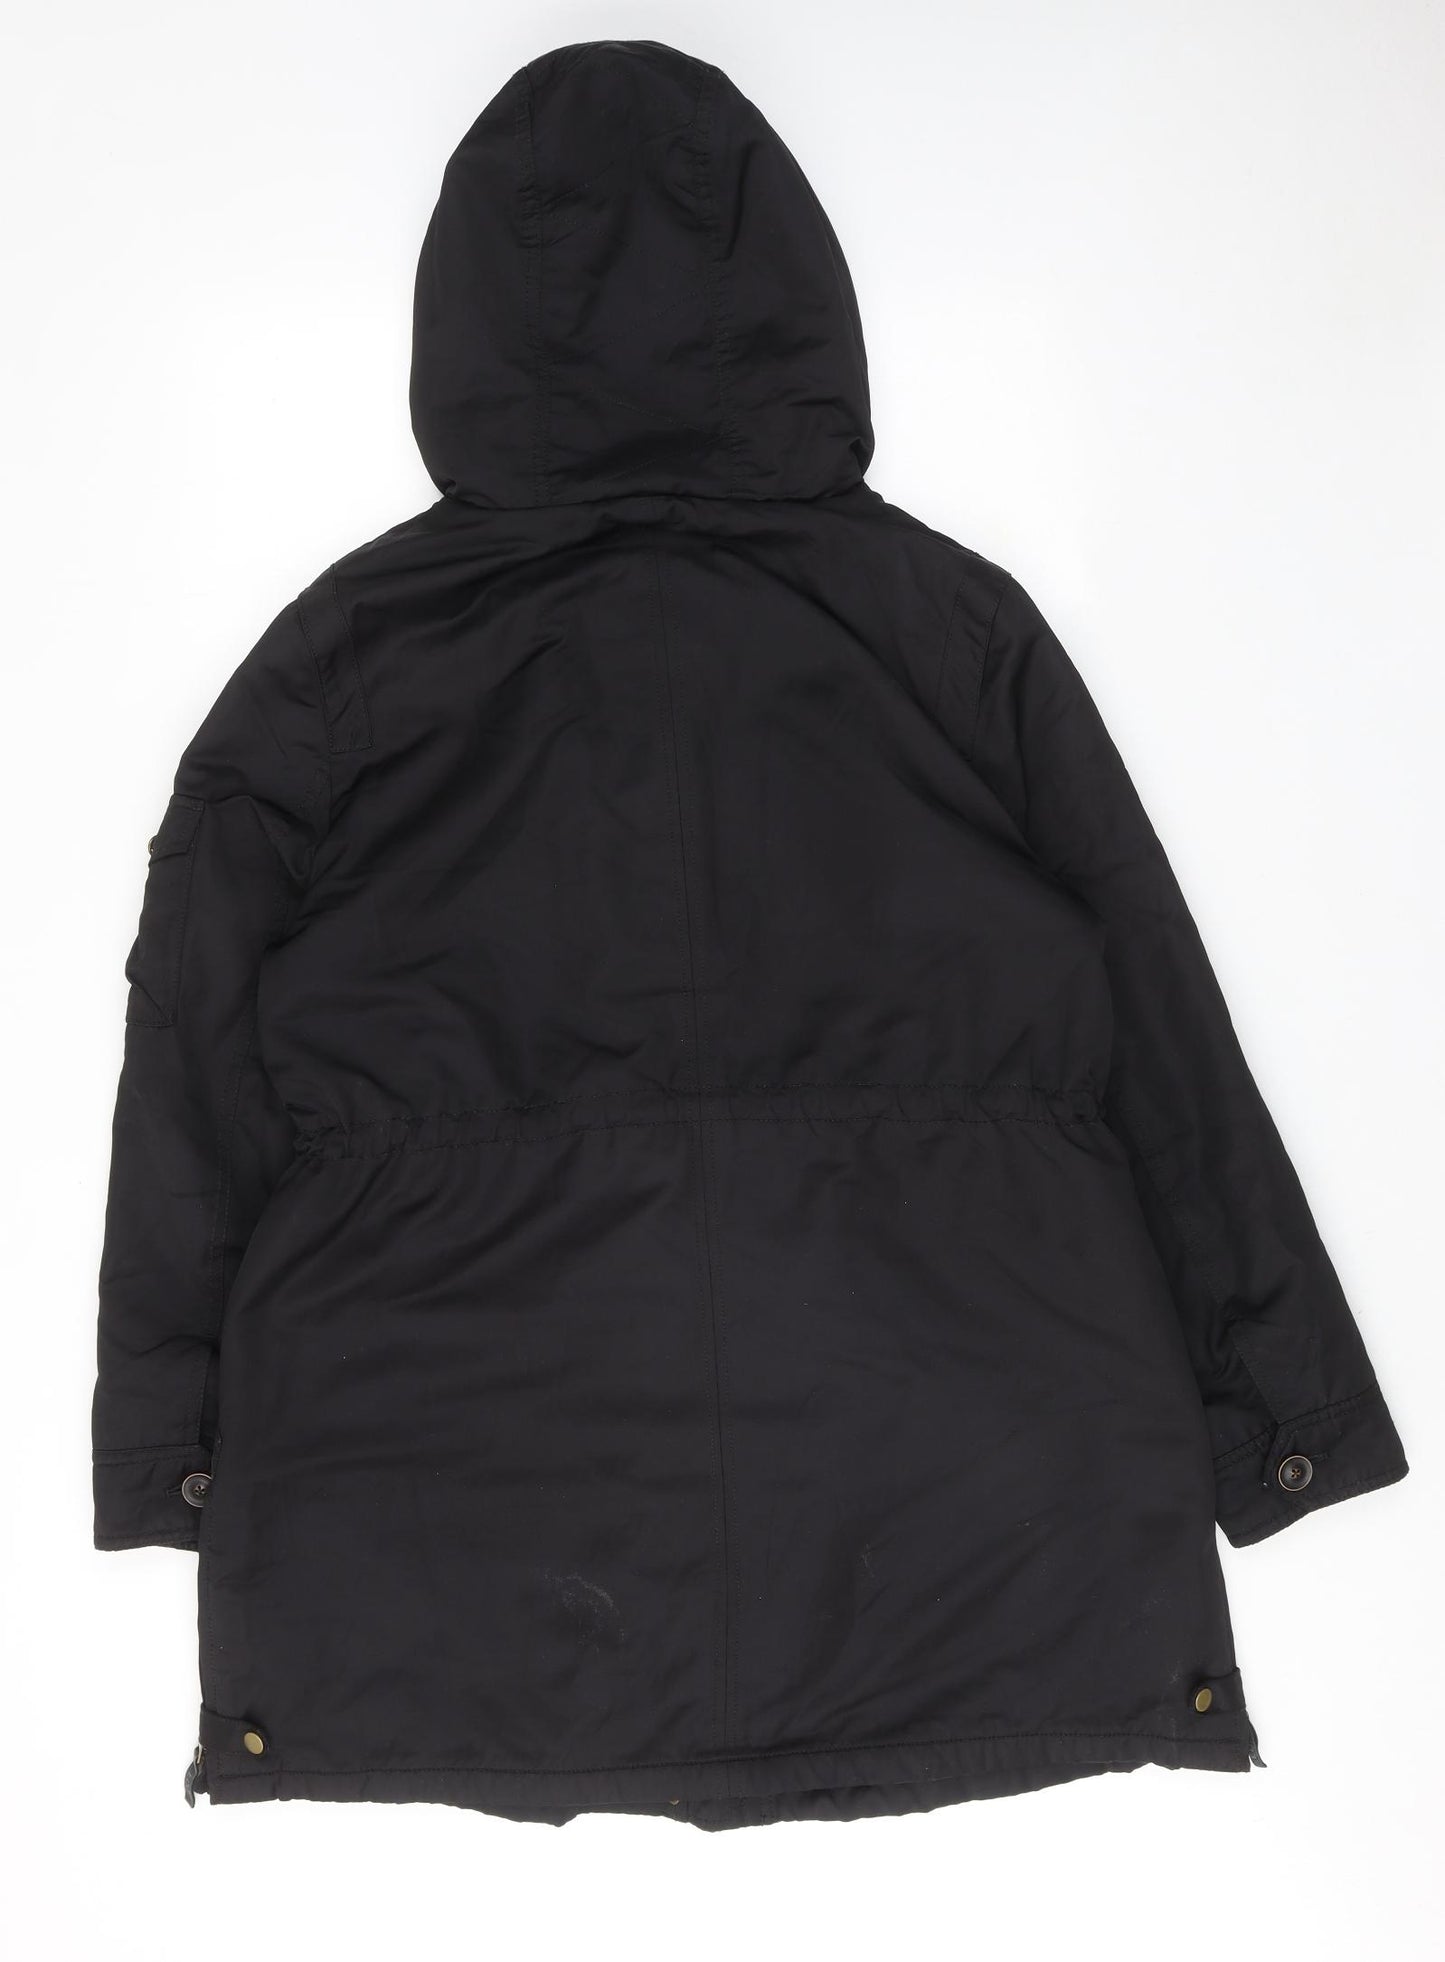 EDC Womens Black Parka Coat Size XL Zip